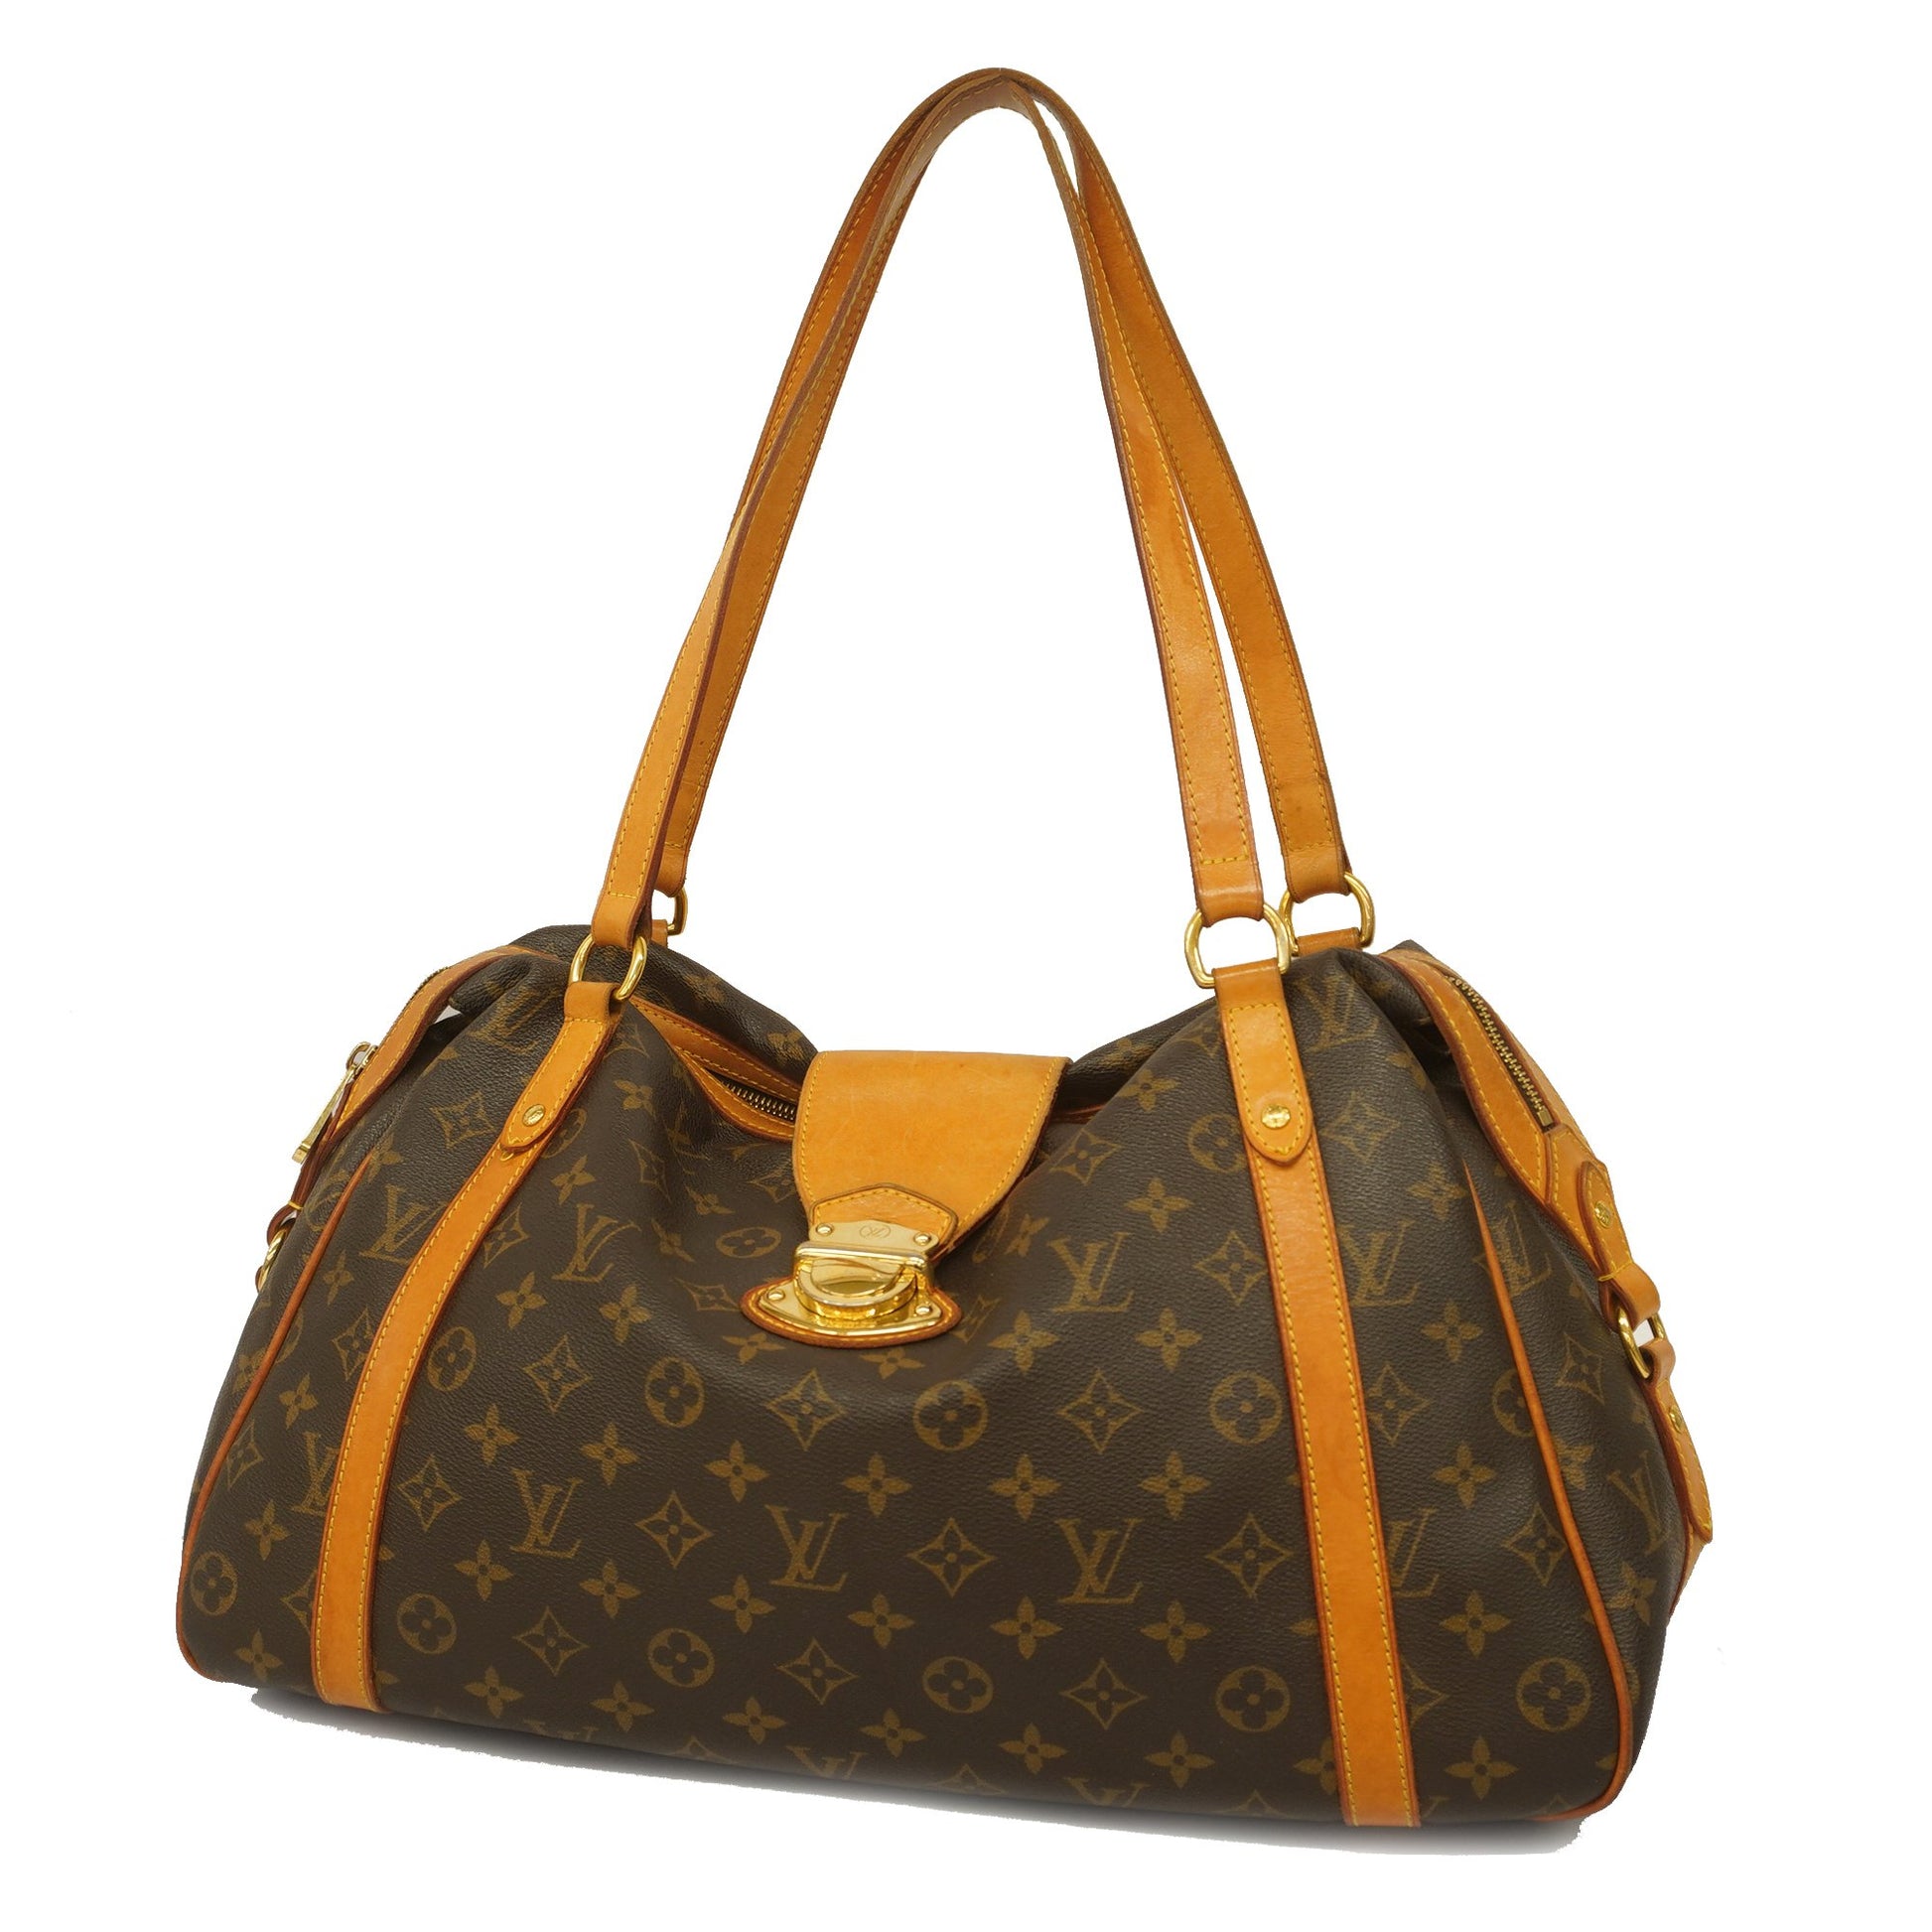 Louis Vuitton Chaine Nanogram Icons Bag Charm and Chain Gold